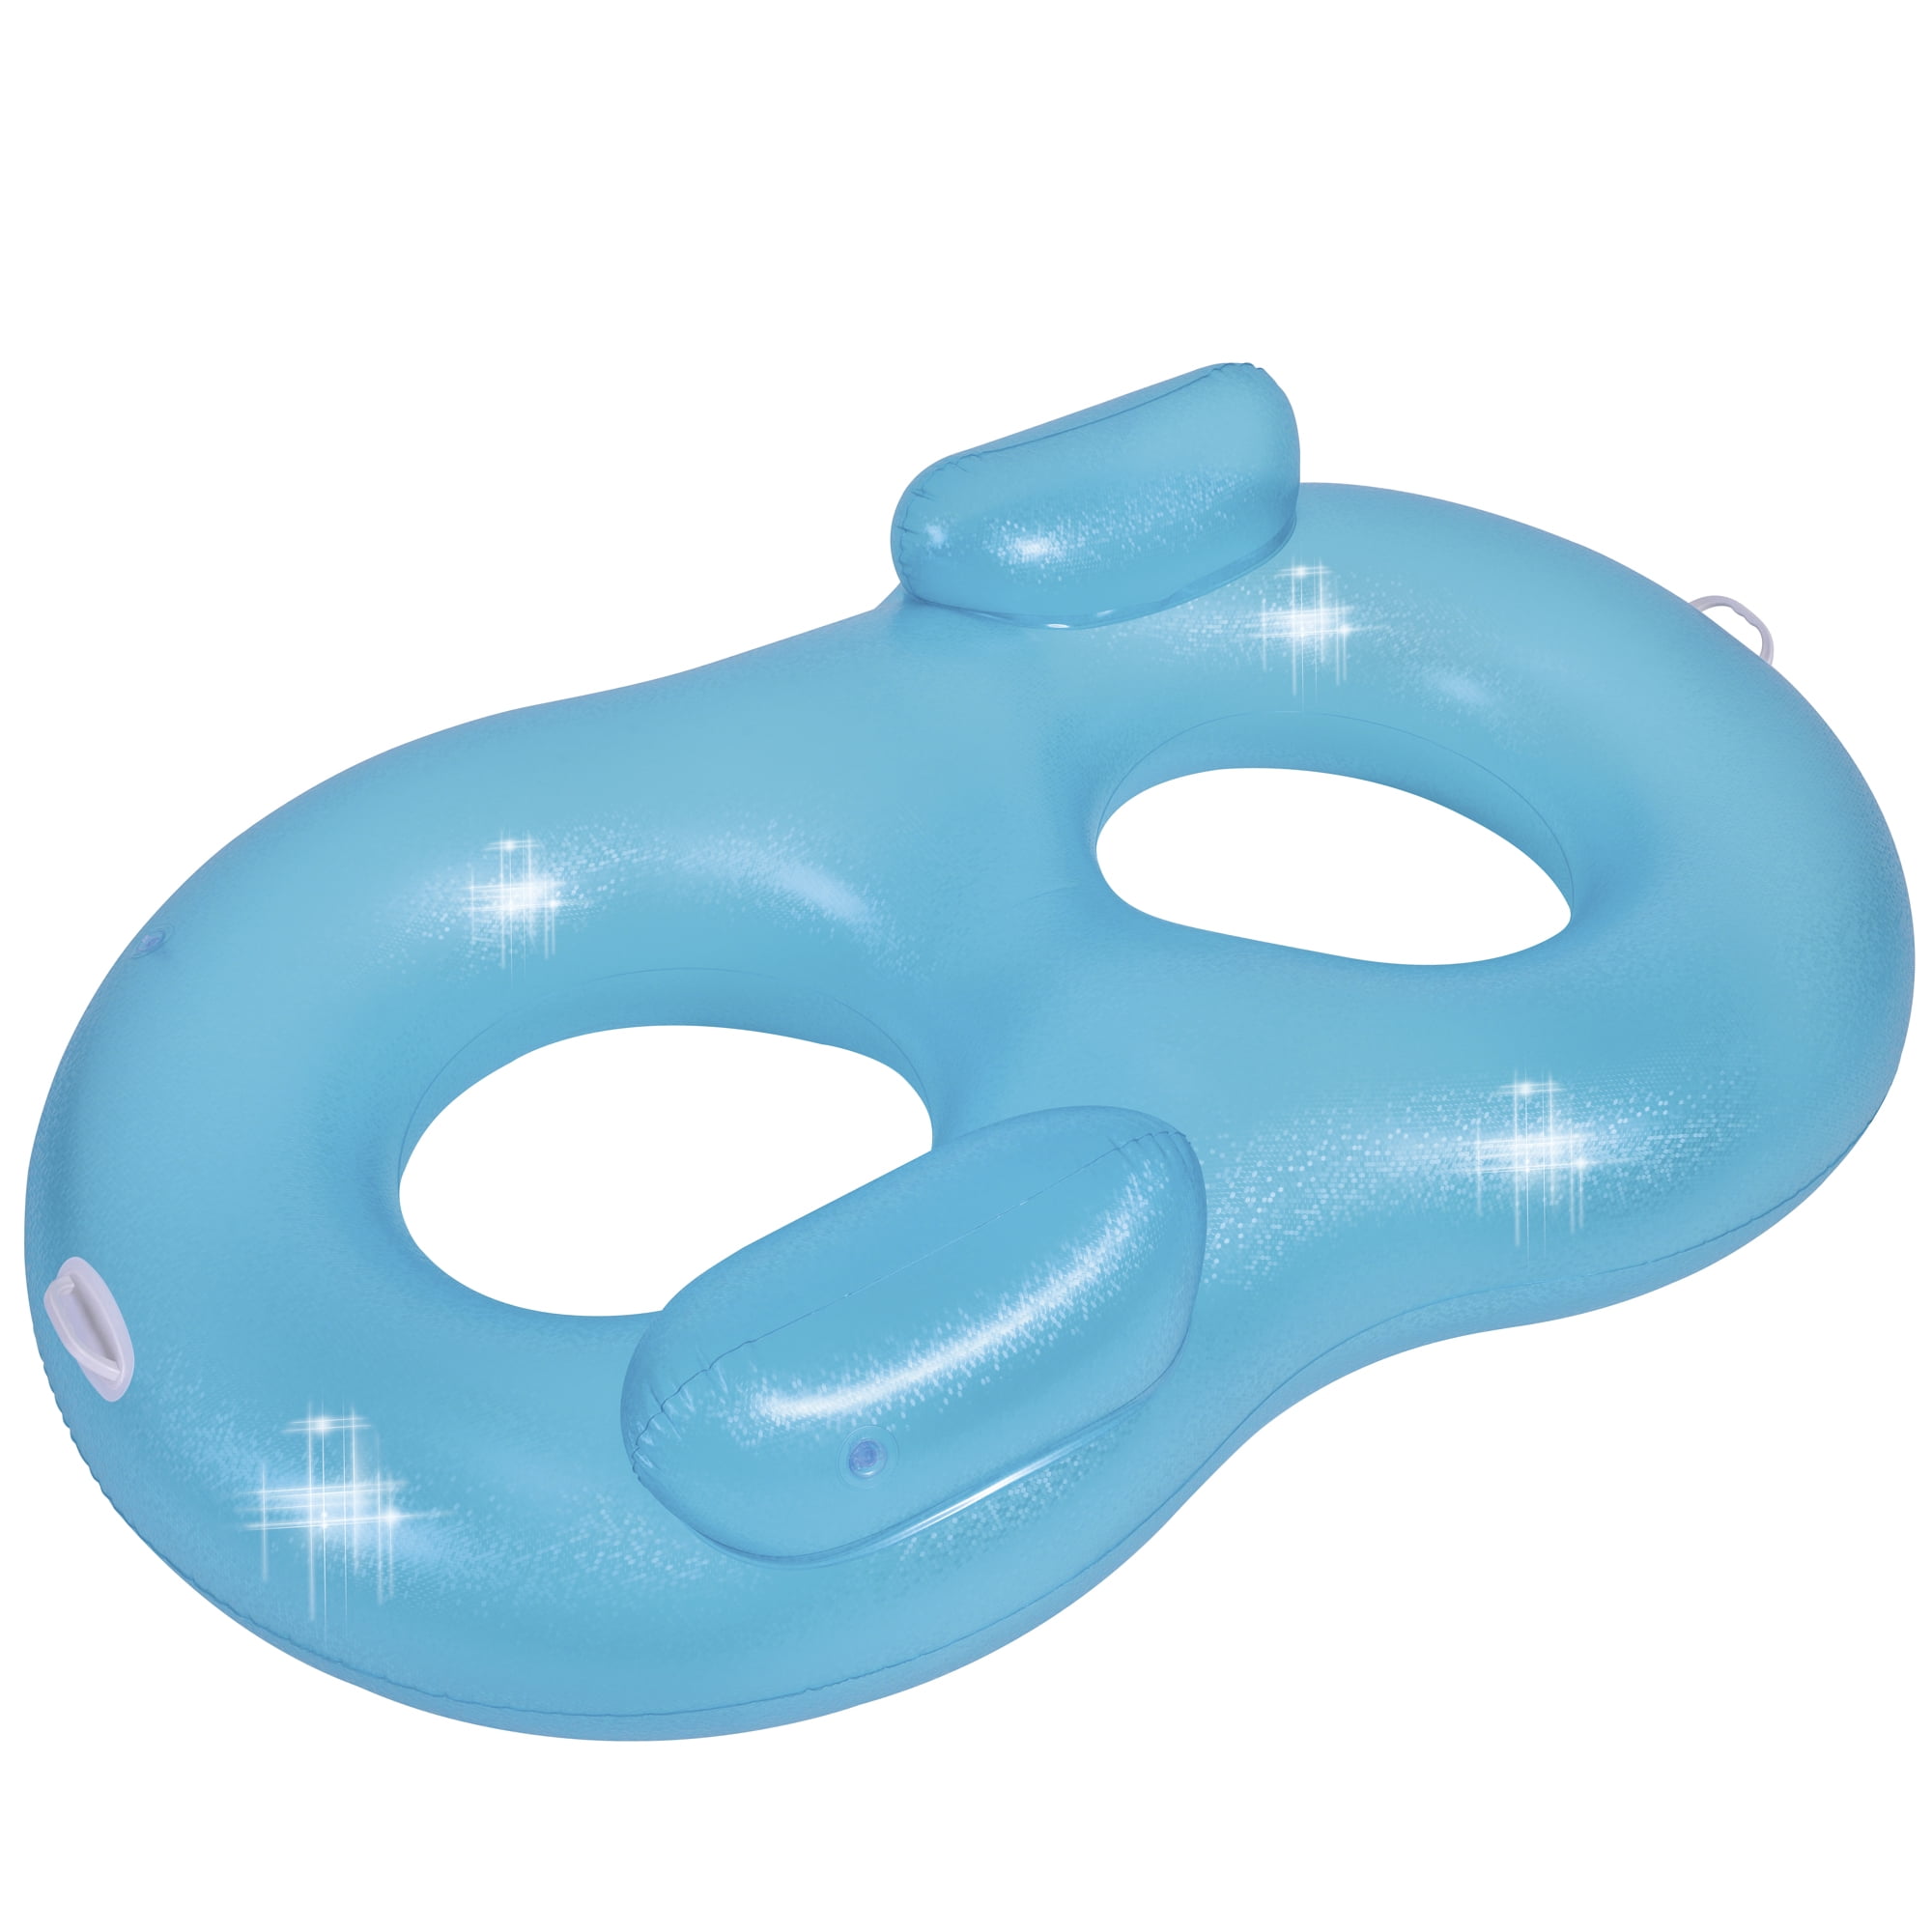 Dierbare wakker worden Is aan het huilen 74" Blue Mosaic Inflatable Duo Water lounger - Walmart.com